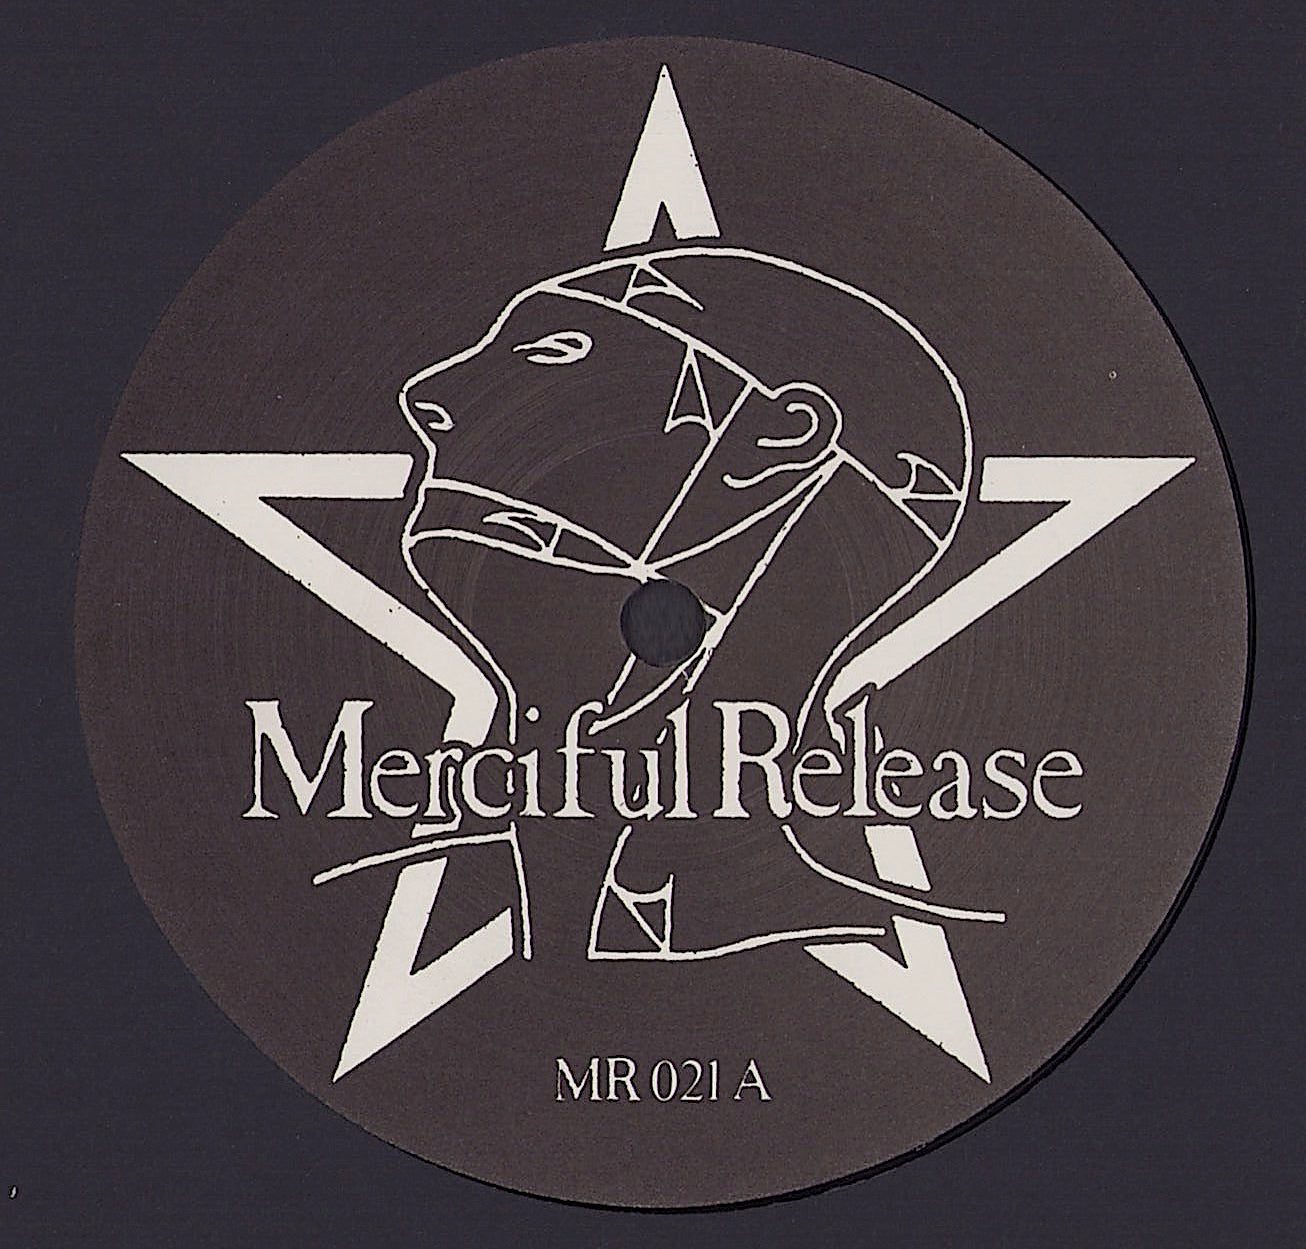 The Sisters Of Mercy - Alice Vinyl 12"